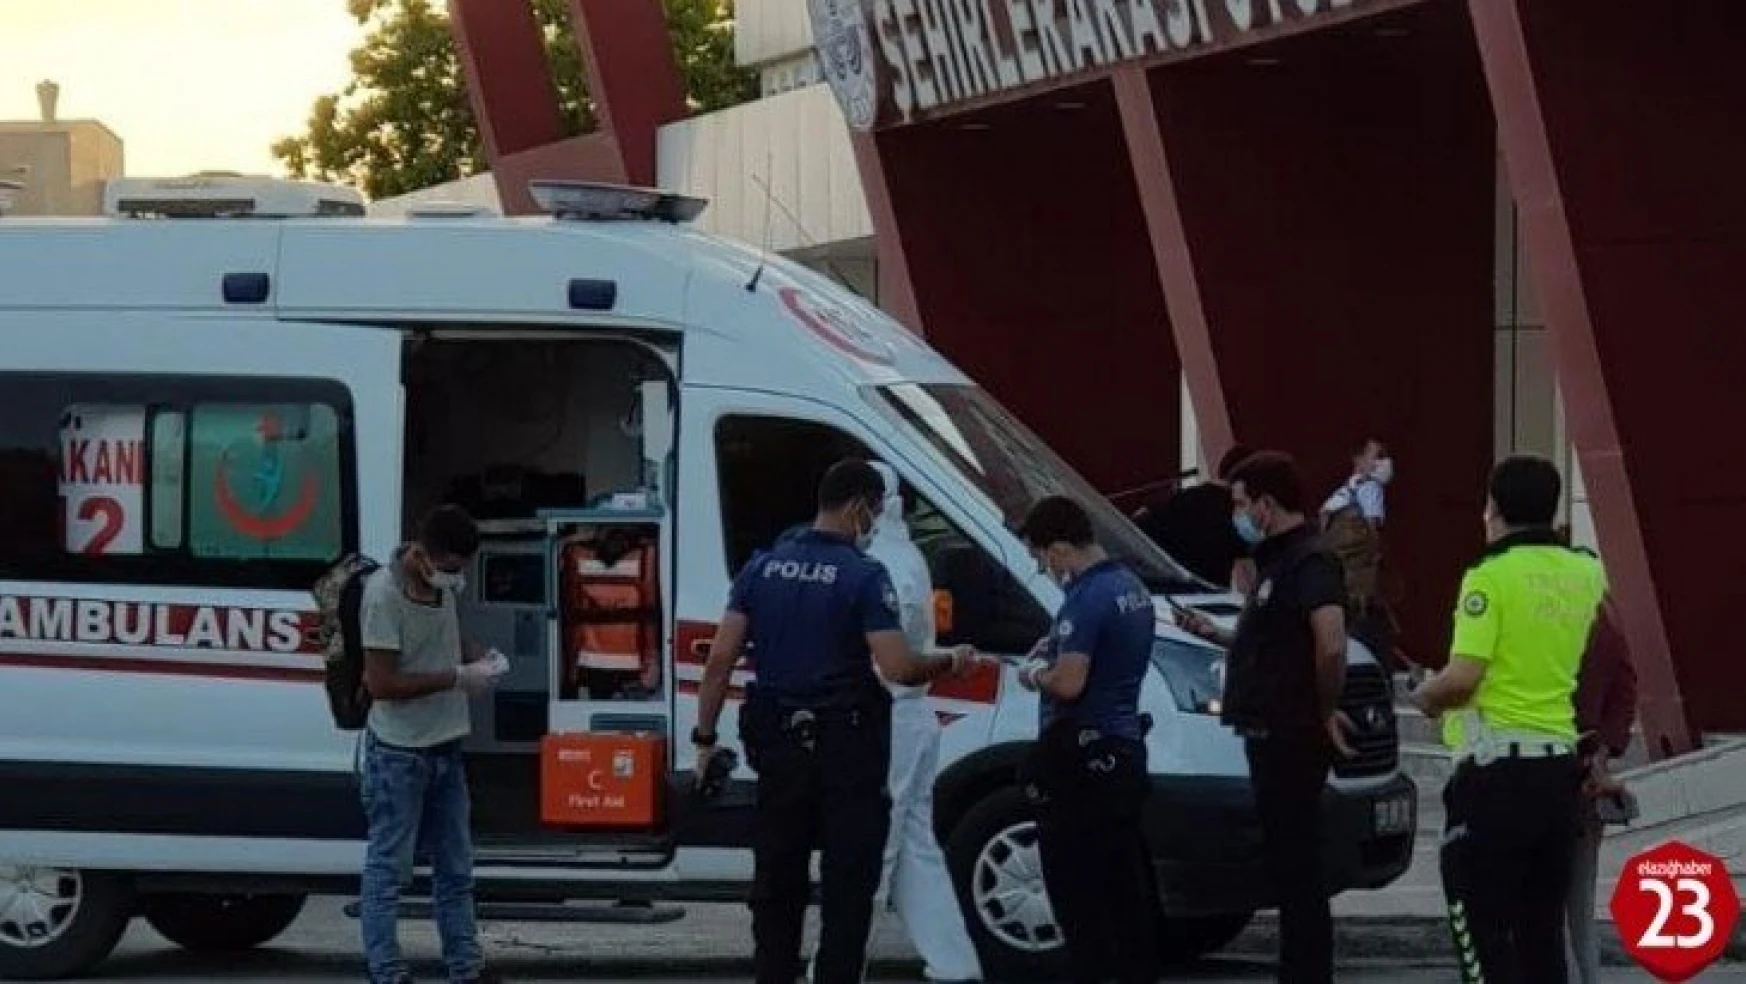 Elazığ'da Covid-19 şüphelisi, terminalde yakalandı